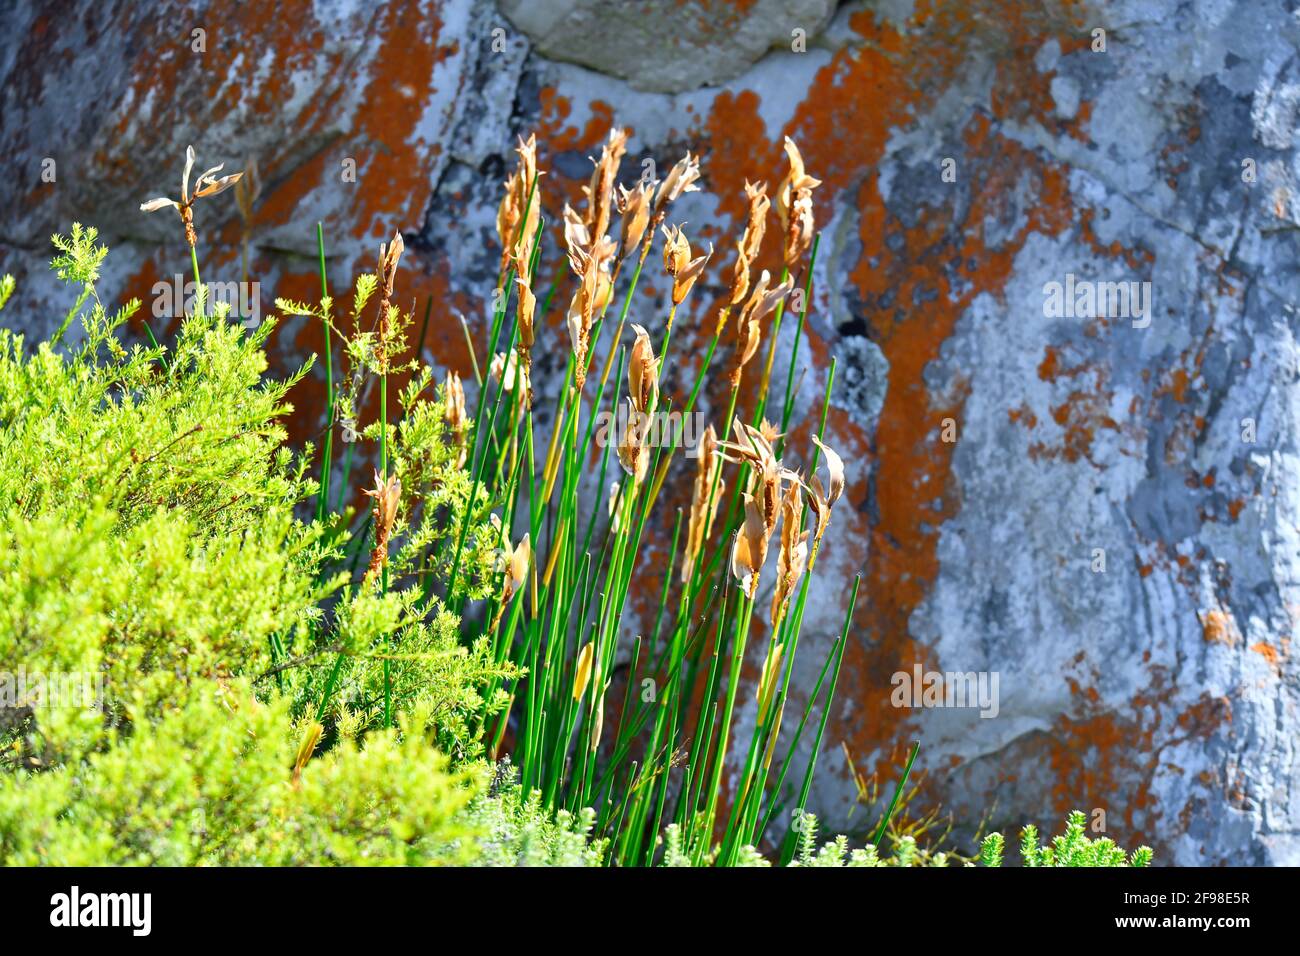 Elegia mucronata 'Bergriet' Una planta de fynbos que crece junto a rocas coloridas, endémica en las montañas del cabo sur, Sudáfrica. Foto de stock